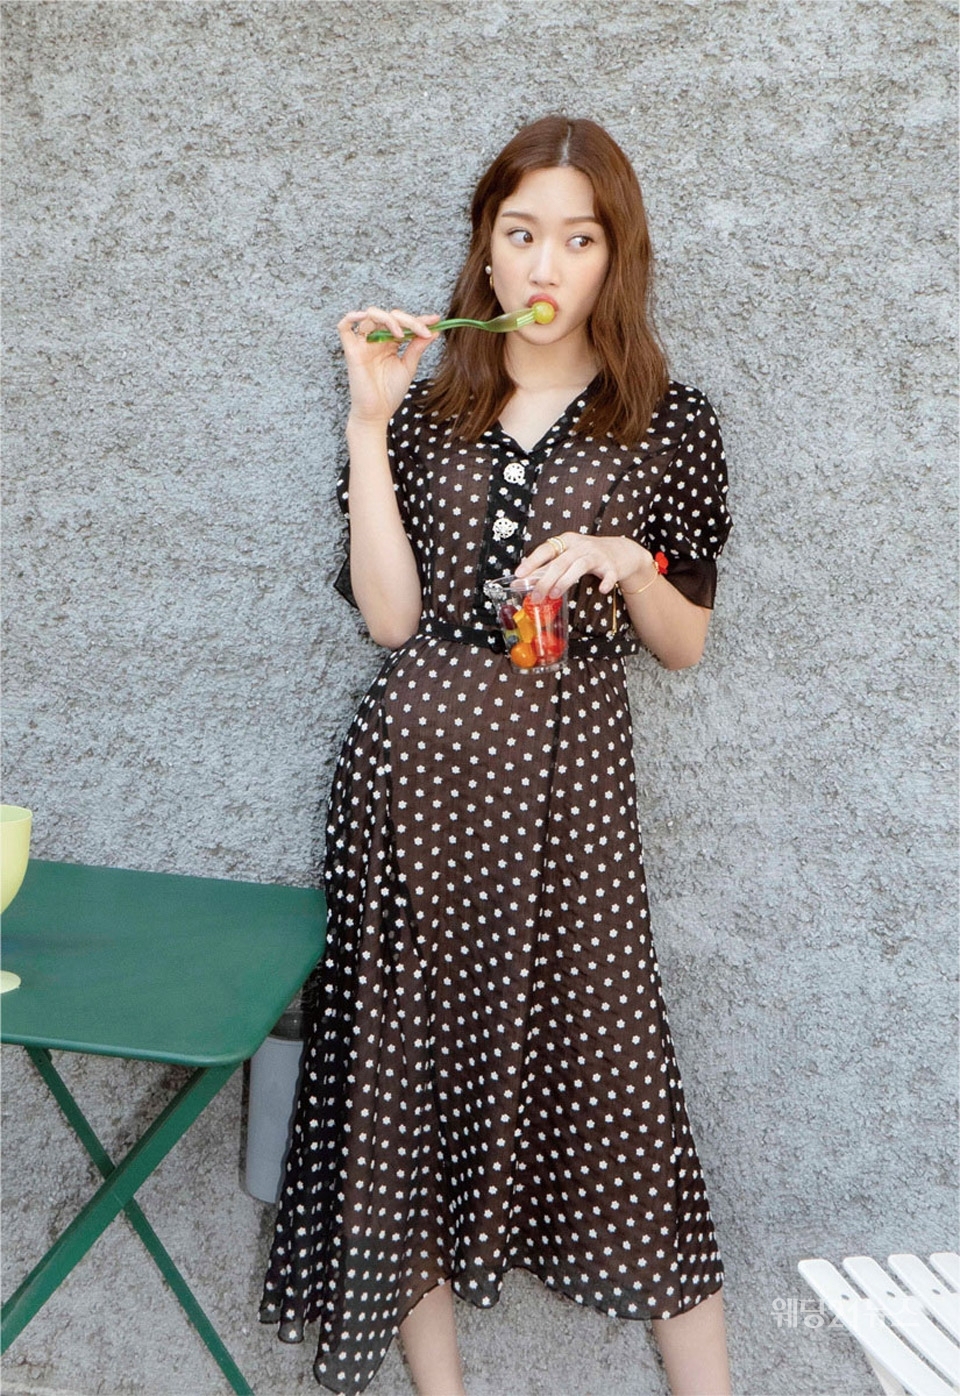 사진 : 제이제이지고트, 배우 문가영과 함께한 여름 컬렉션 화보